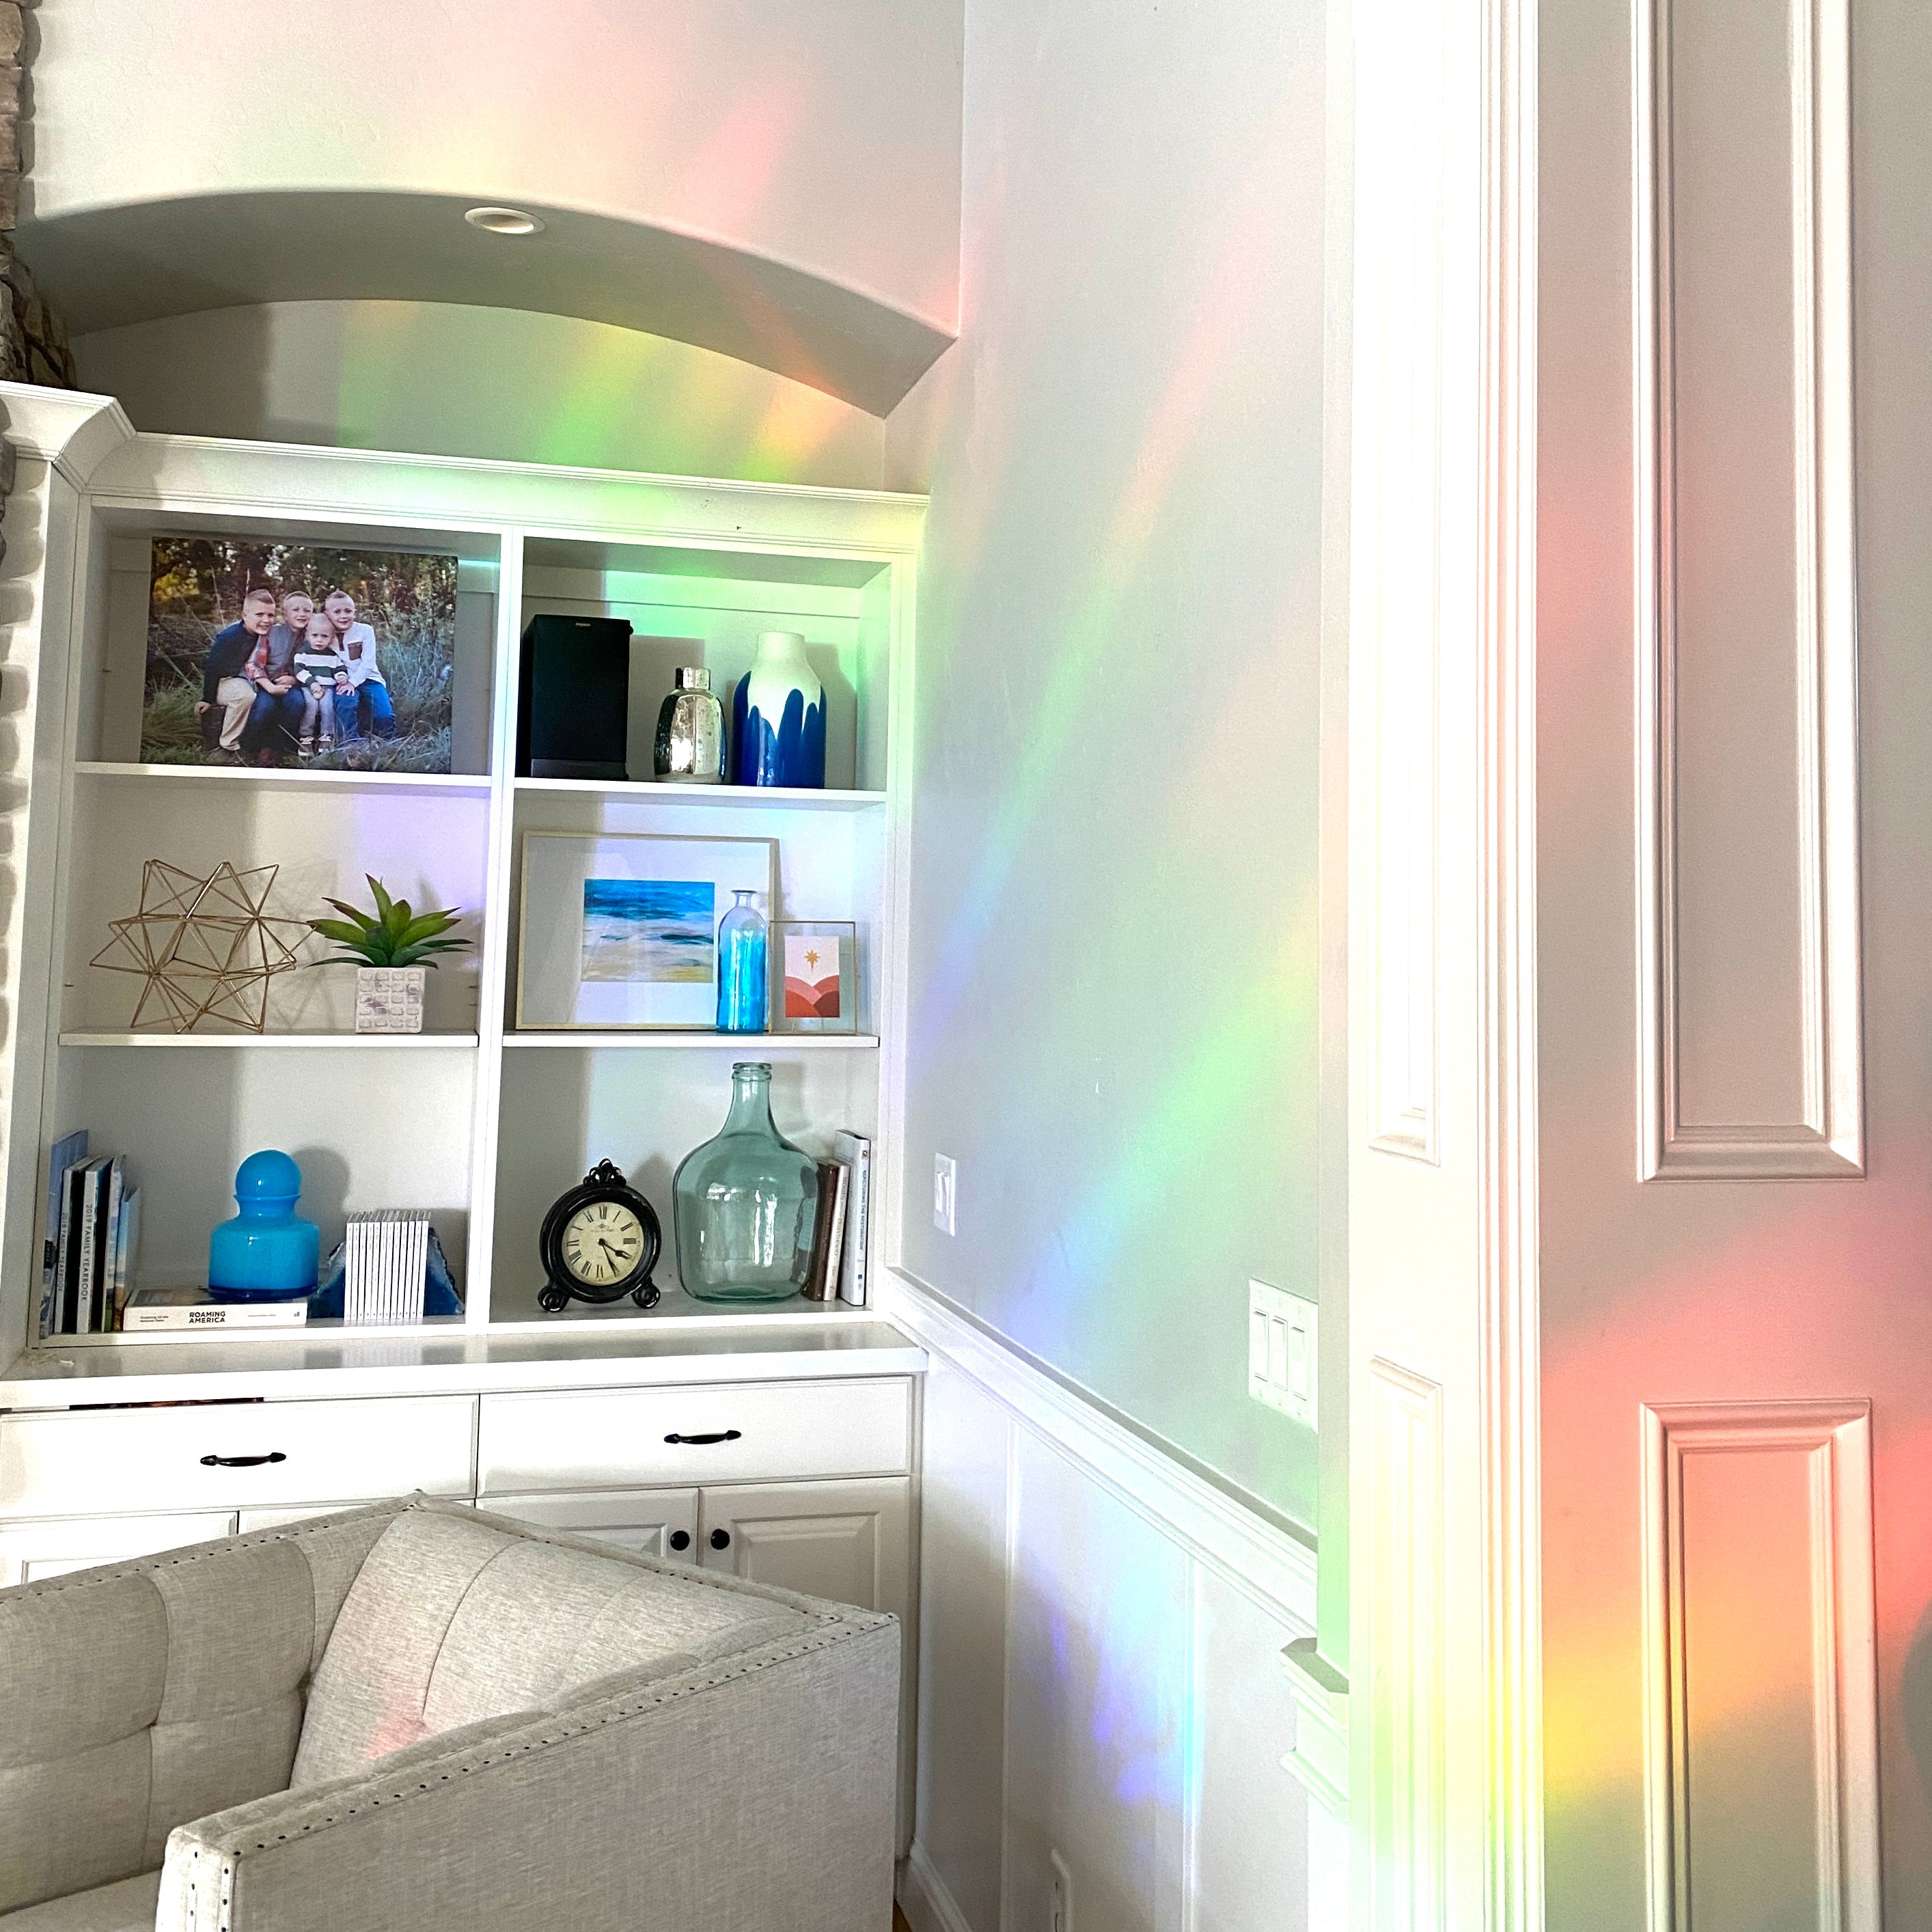 Holographic Suncatcher Rainbow Window Film  Rainbow window, Rainbow light,  Rainbow magic